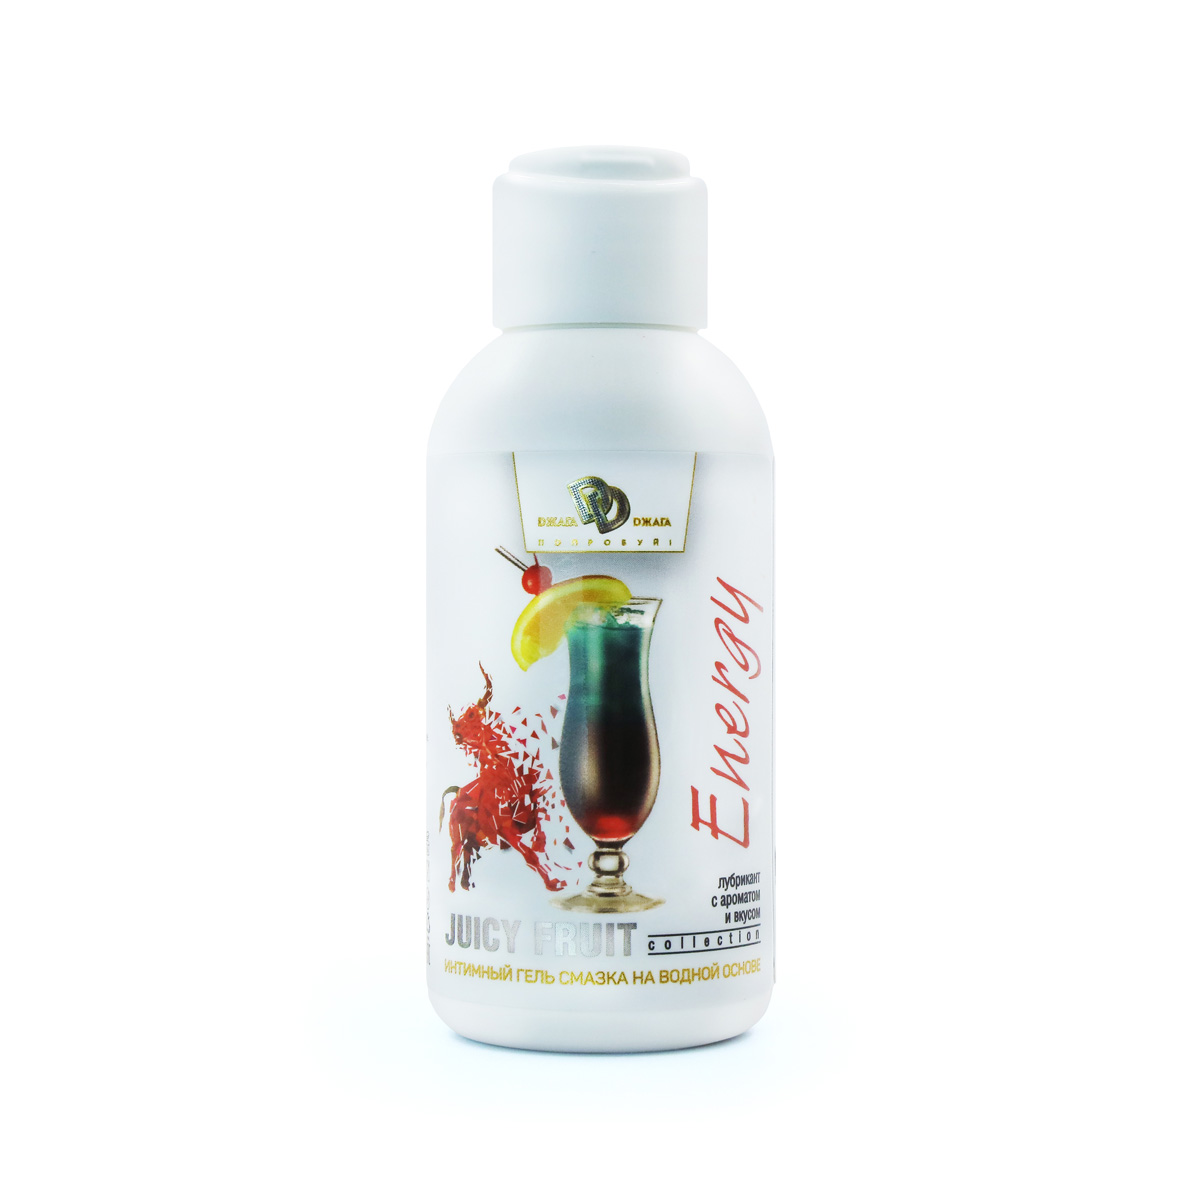 BioMed Juicy Fruit Energy - Оральная гель-смазка со вкусом Редбула, 100 мл